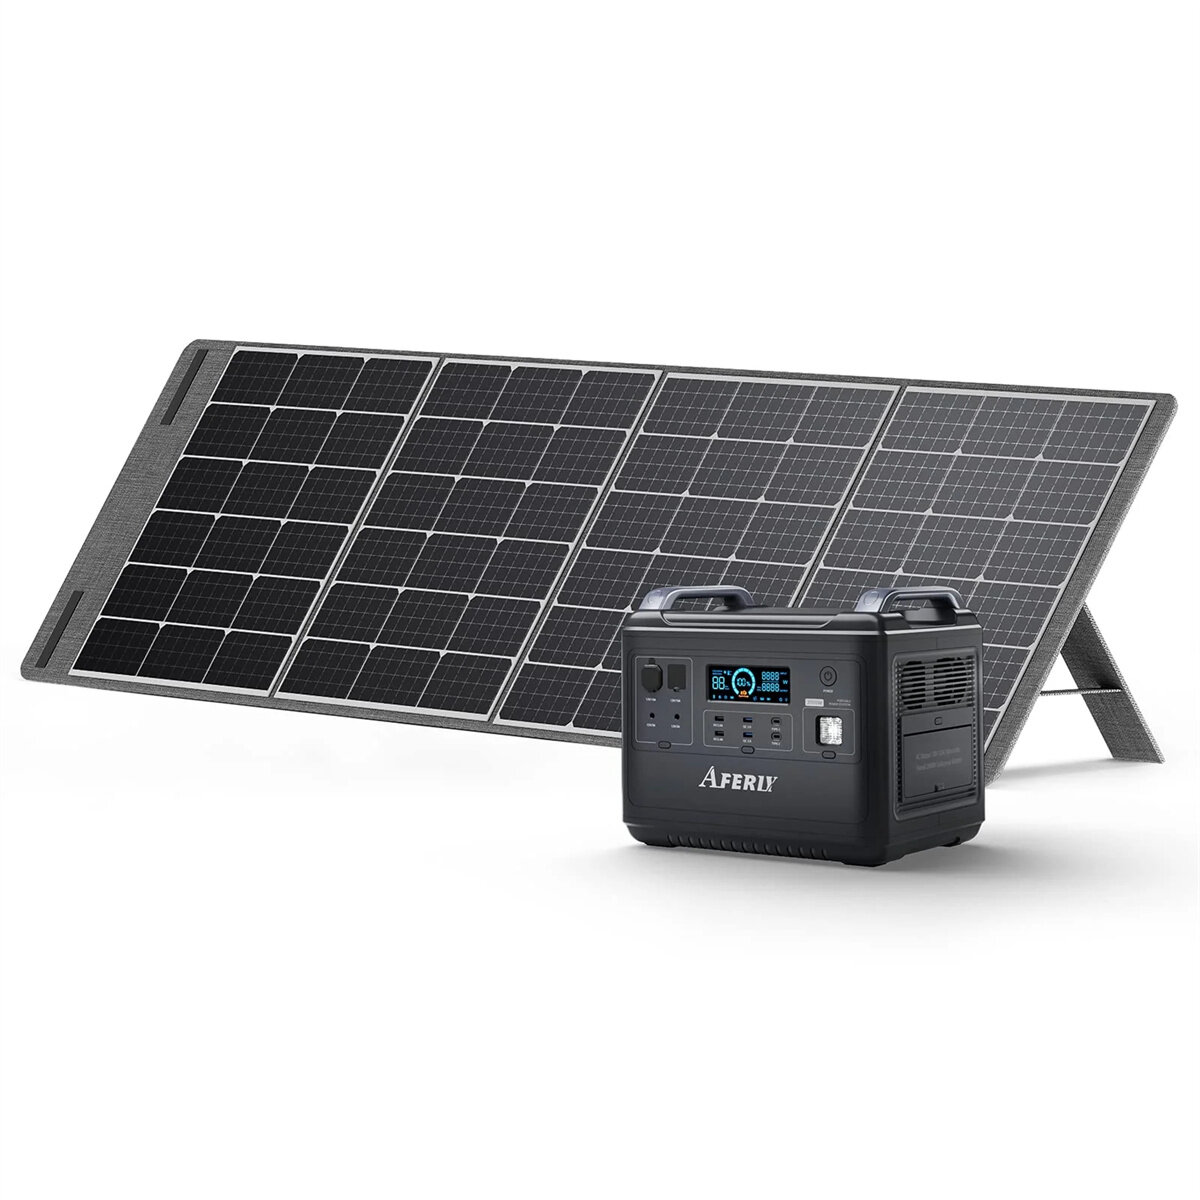 [EU Direct] Fornitura di alimentazione portatile Aferiy da 2000 W con set di pannelli solari da 200 W, batteria di stoccaggio LiFePO4 da 1997 Wh / 624000 mAh, UPS dispositivo ininterrotto per il risparmio energetico campeggio all'aperto spina dell'UE